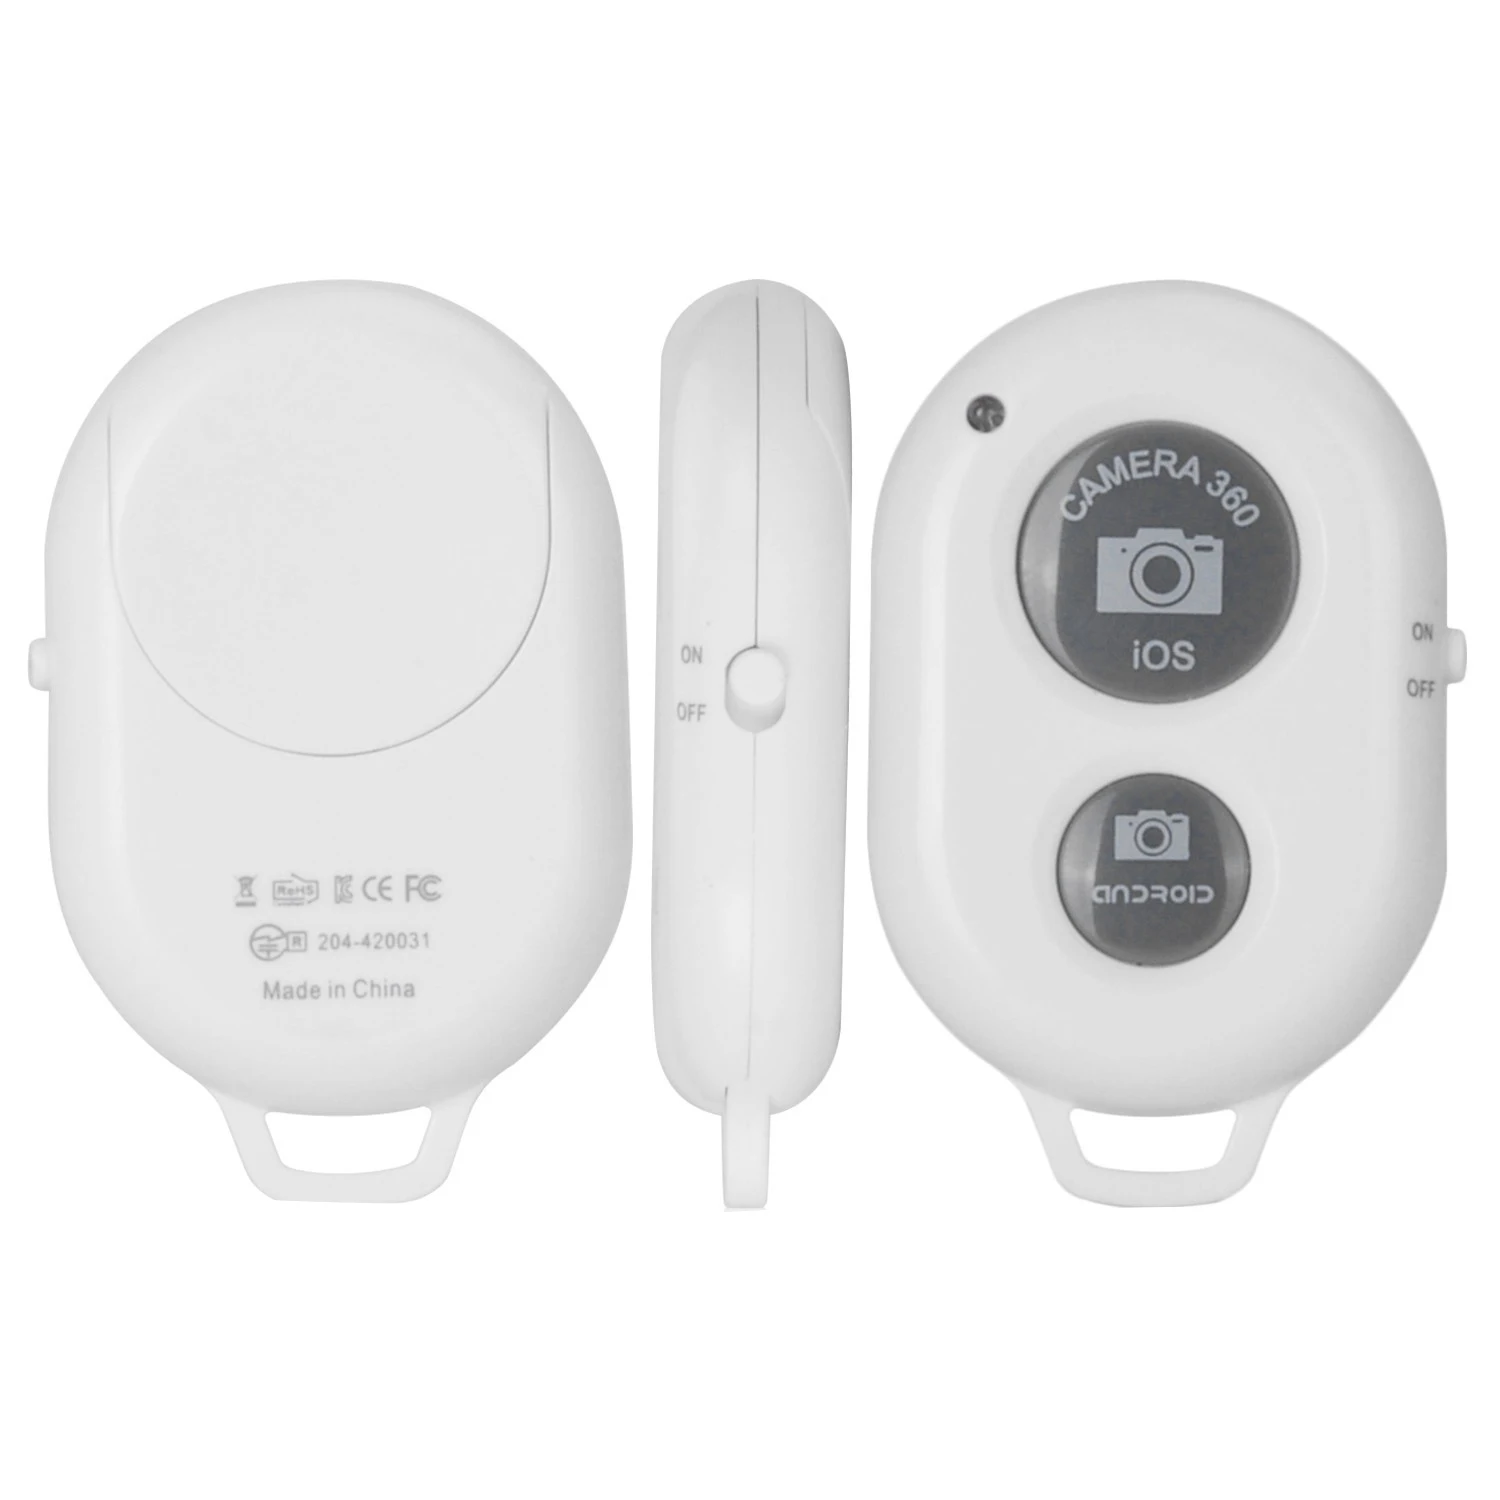 Centechia Новый WI-FI Беспроводной Bluetooth пульт дистанционного спуска затвора Камера затвора селфи Автоспуск для Iphone для Samsung Android